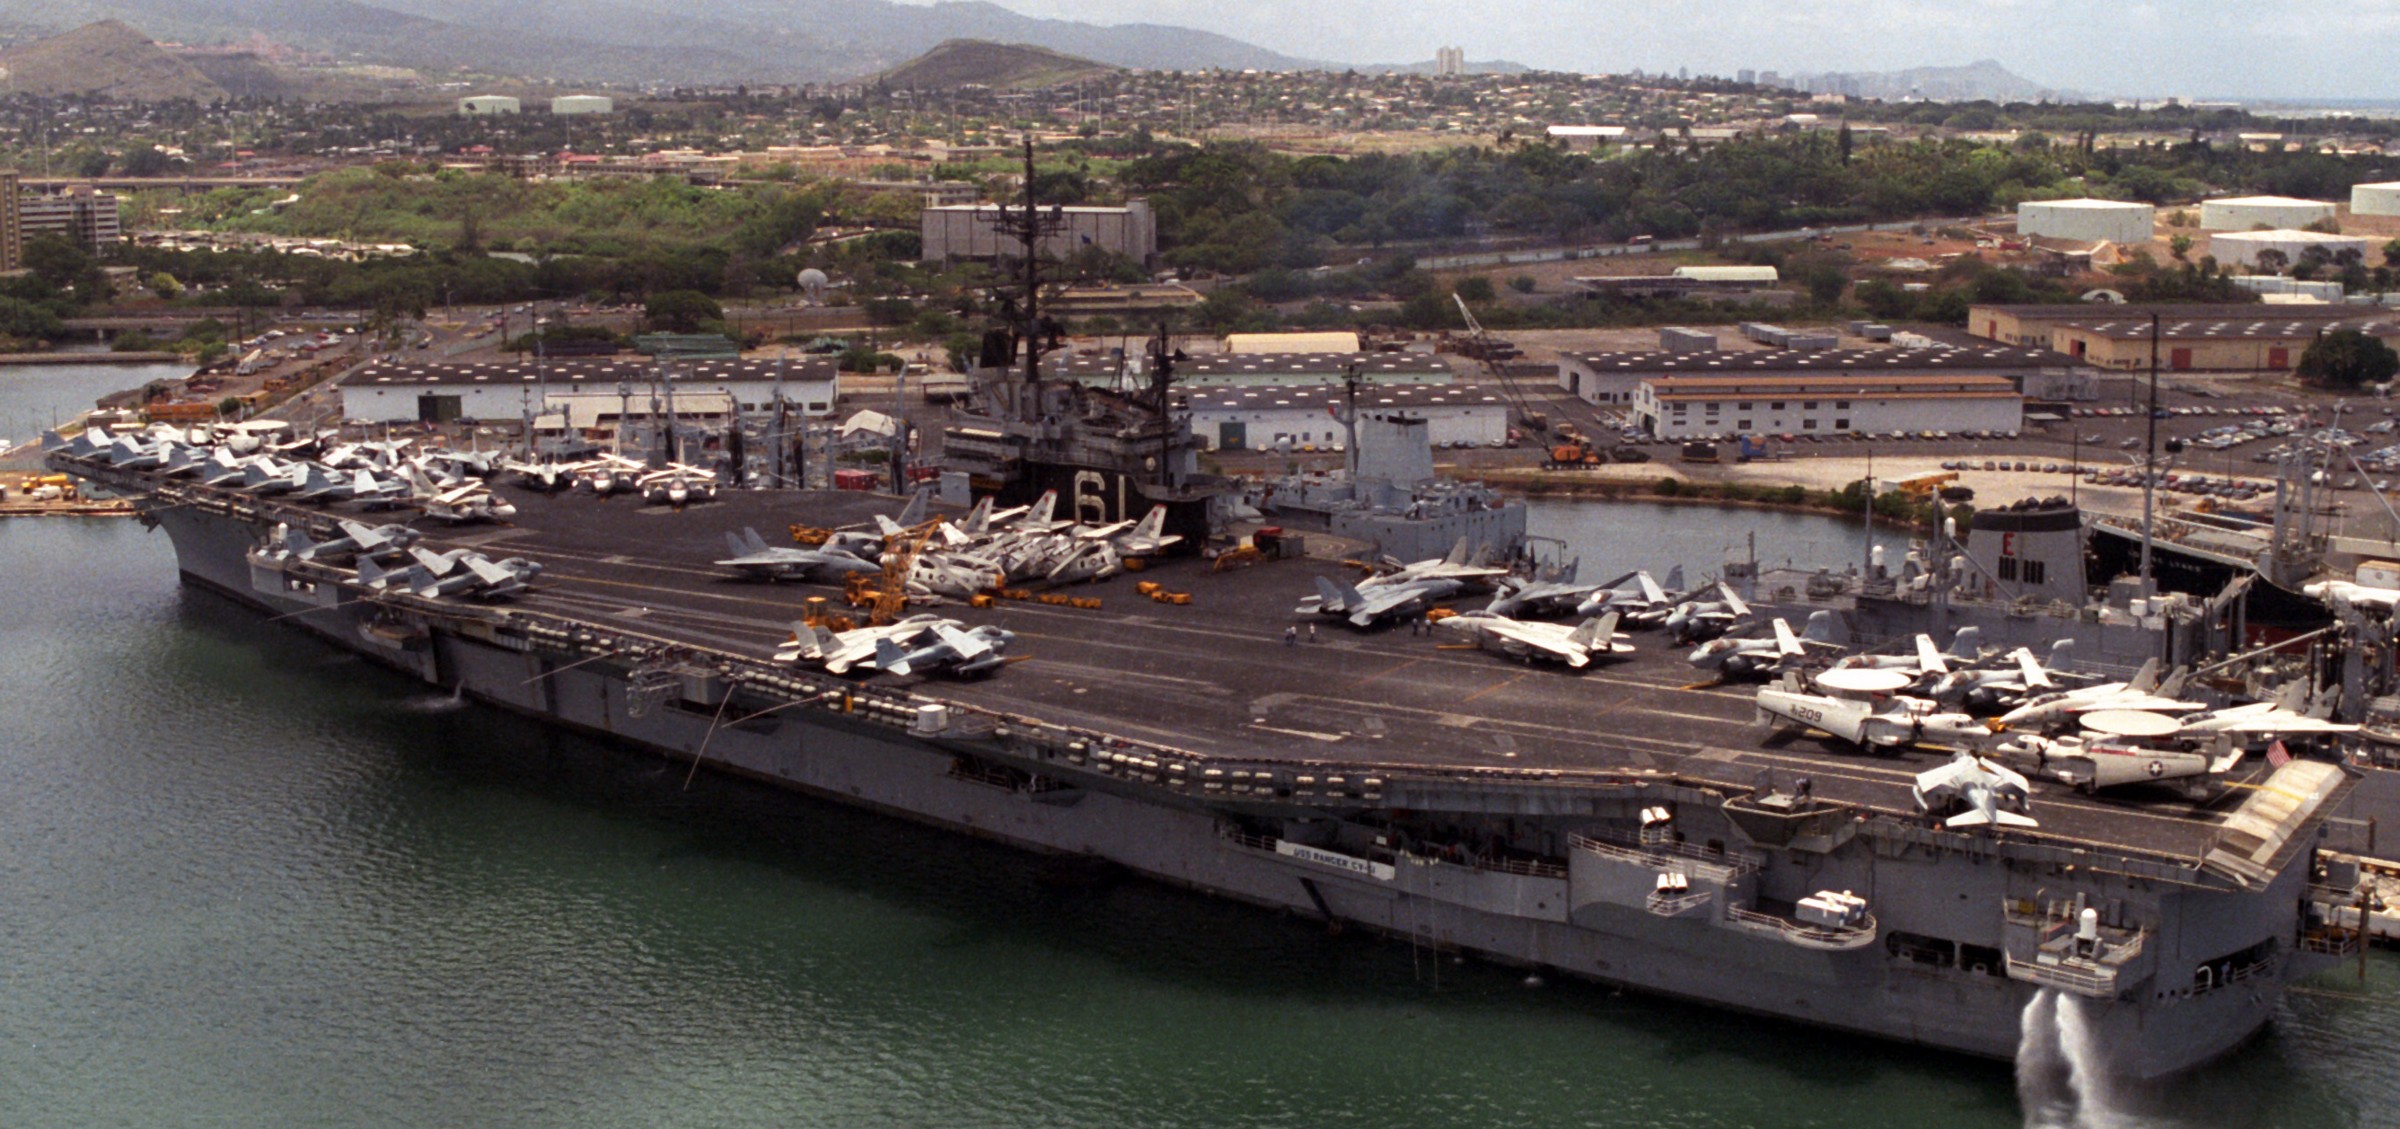 cv-61 uss ranger forrestal class aircraft carrier air wing cvw-2 us navy pearl harbor hawaii 1986 54